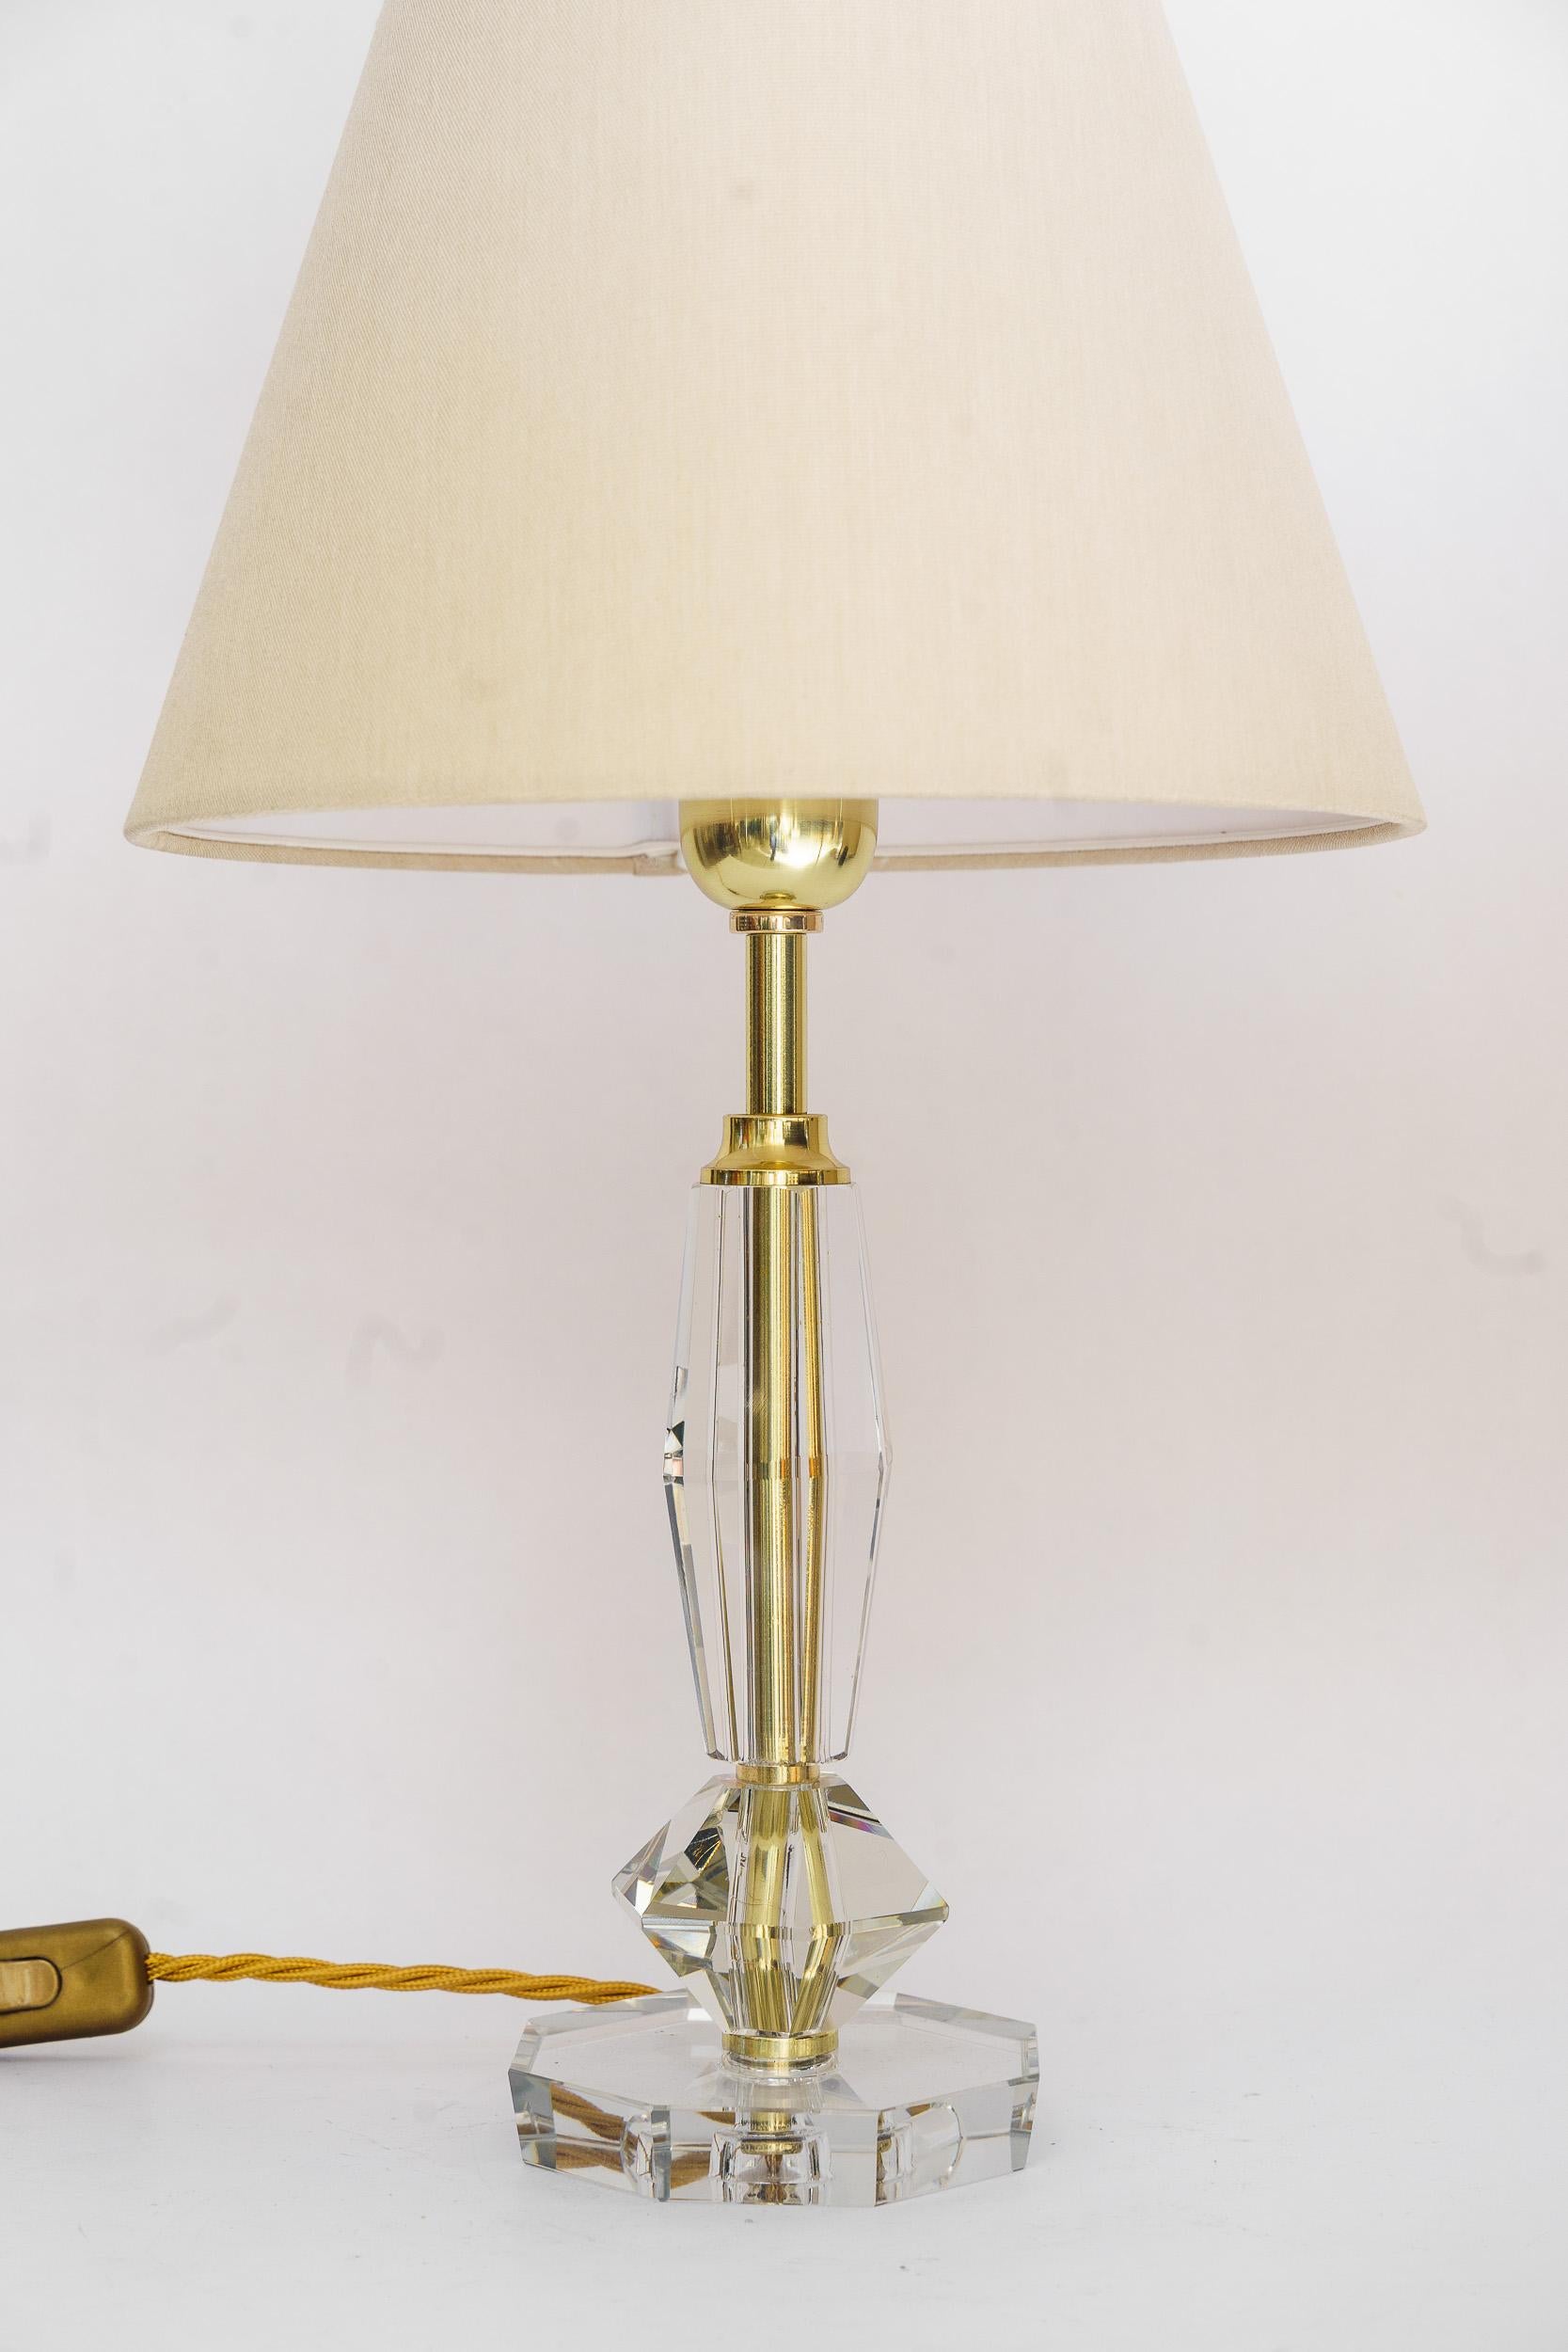 Grande lampe de table Art Déco bakalowits viennoise des années 1920
Lampe de table en verre de haute qualité
L'abat-jour en tissu est remplacé (neuf).